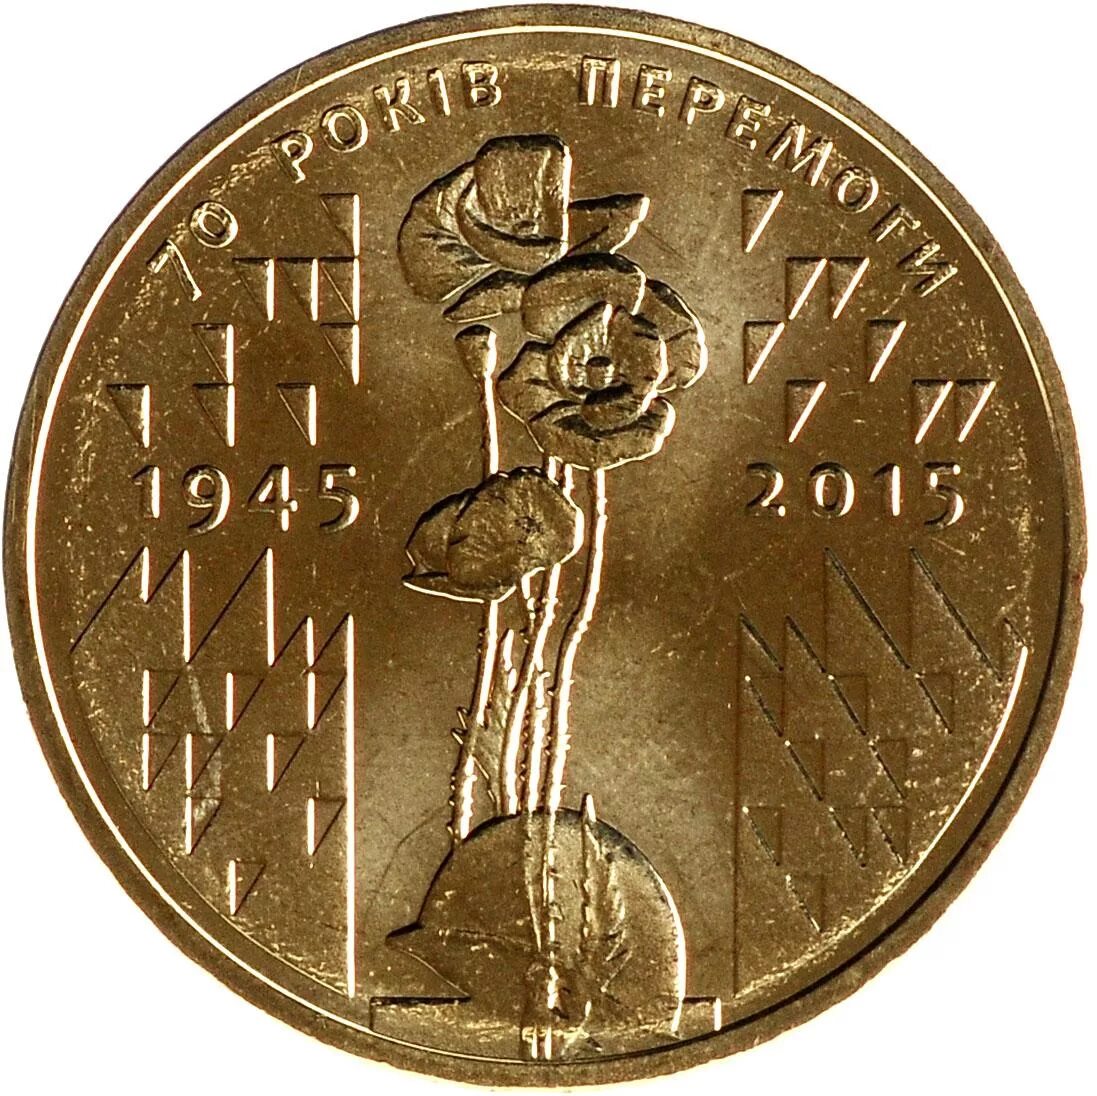 Украинская монета 1 гривна. 1 Гривна 2015г. 70 Лет Победы. Победная монета 1 гривна. Железная гривна.